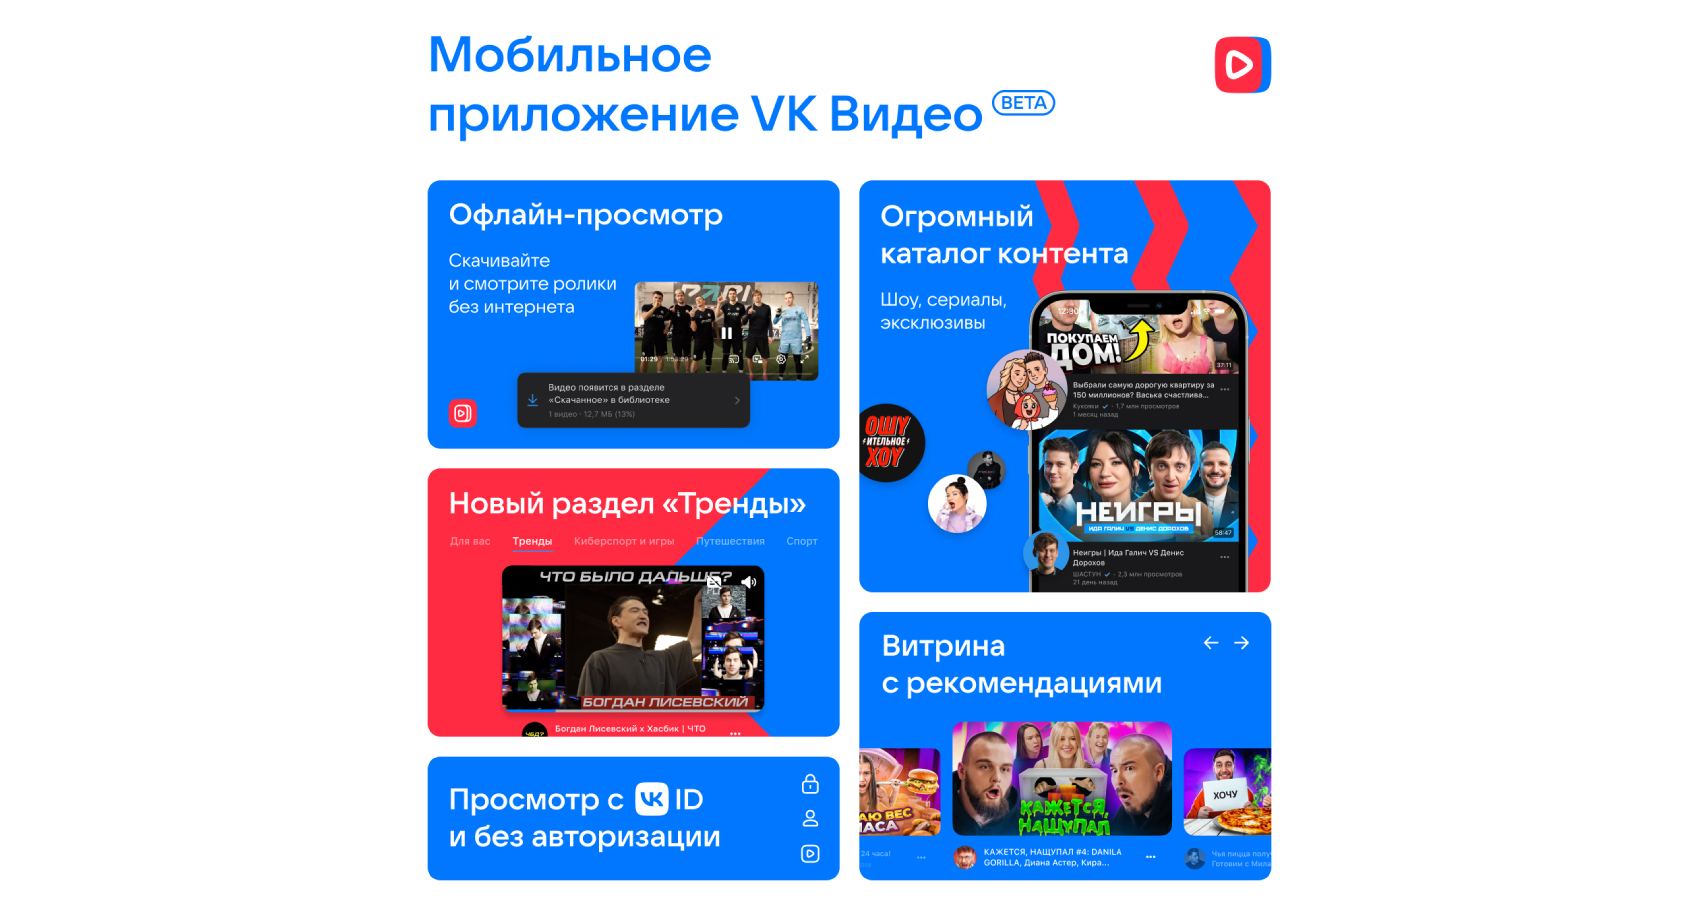 Мобильное приложение VK Видео